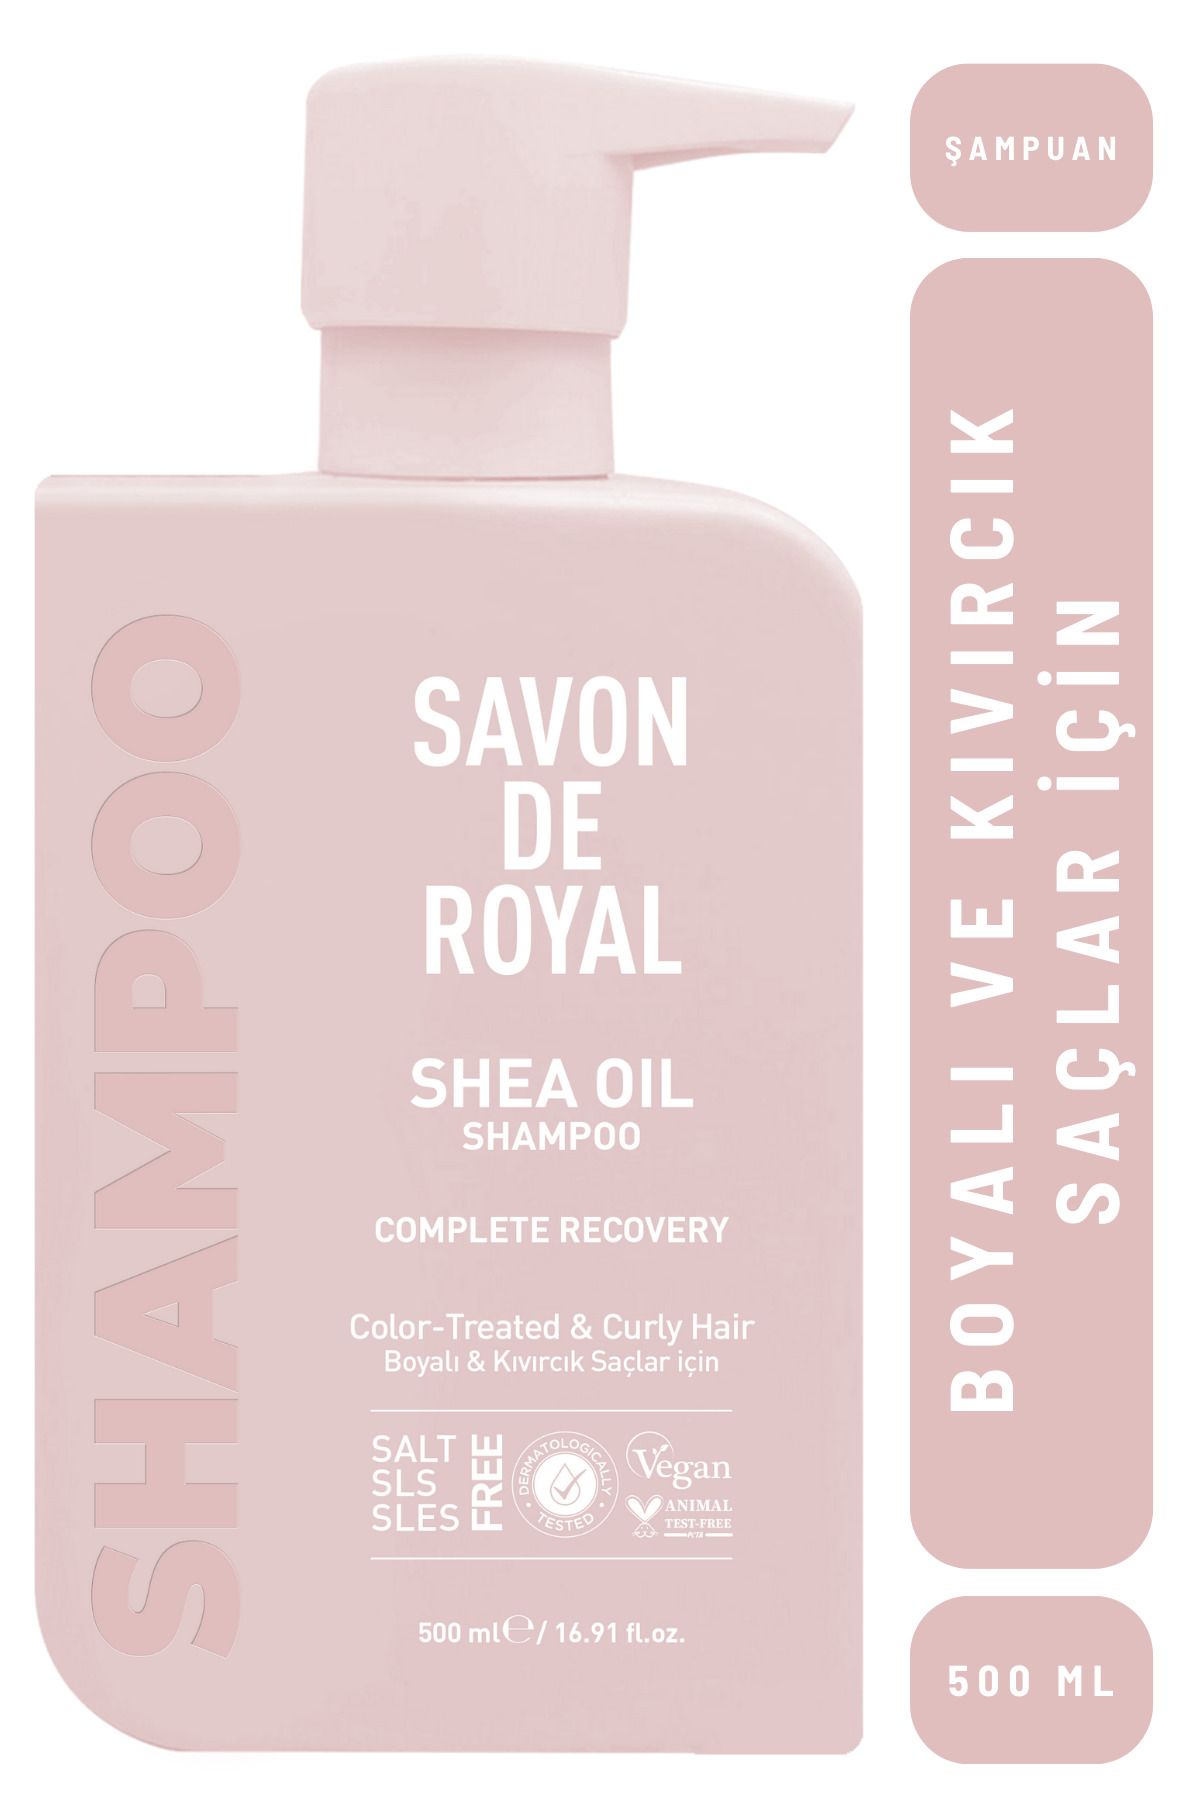 Savon de Royal - Shea Yağı - Boyalı ve Kıvırcık Saçlar İçin İyileşme Etkili Şampuan 500 ml